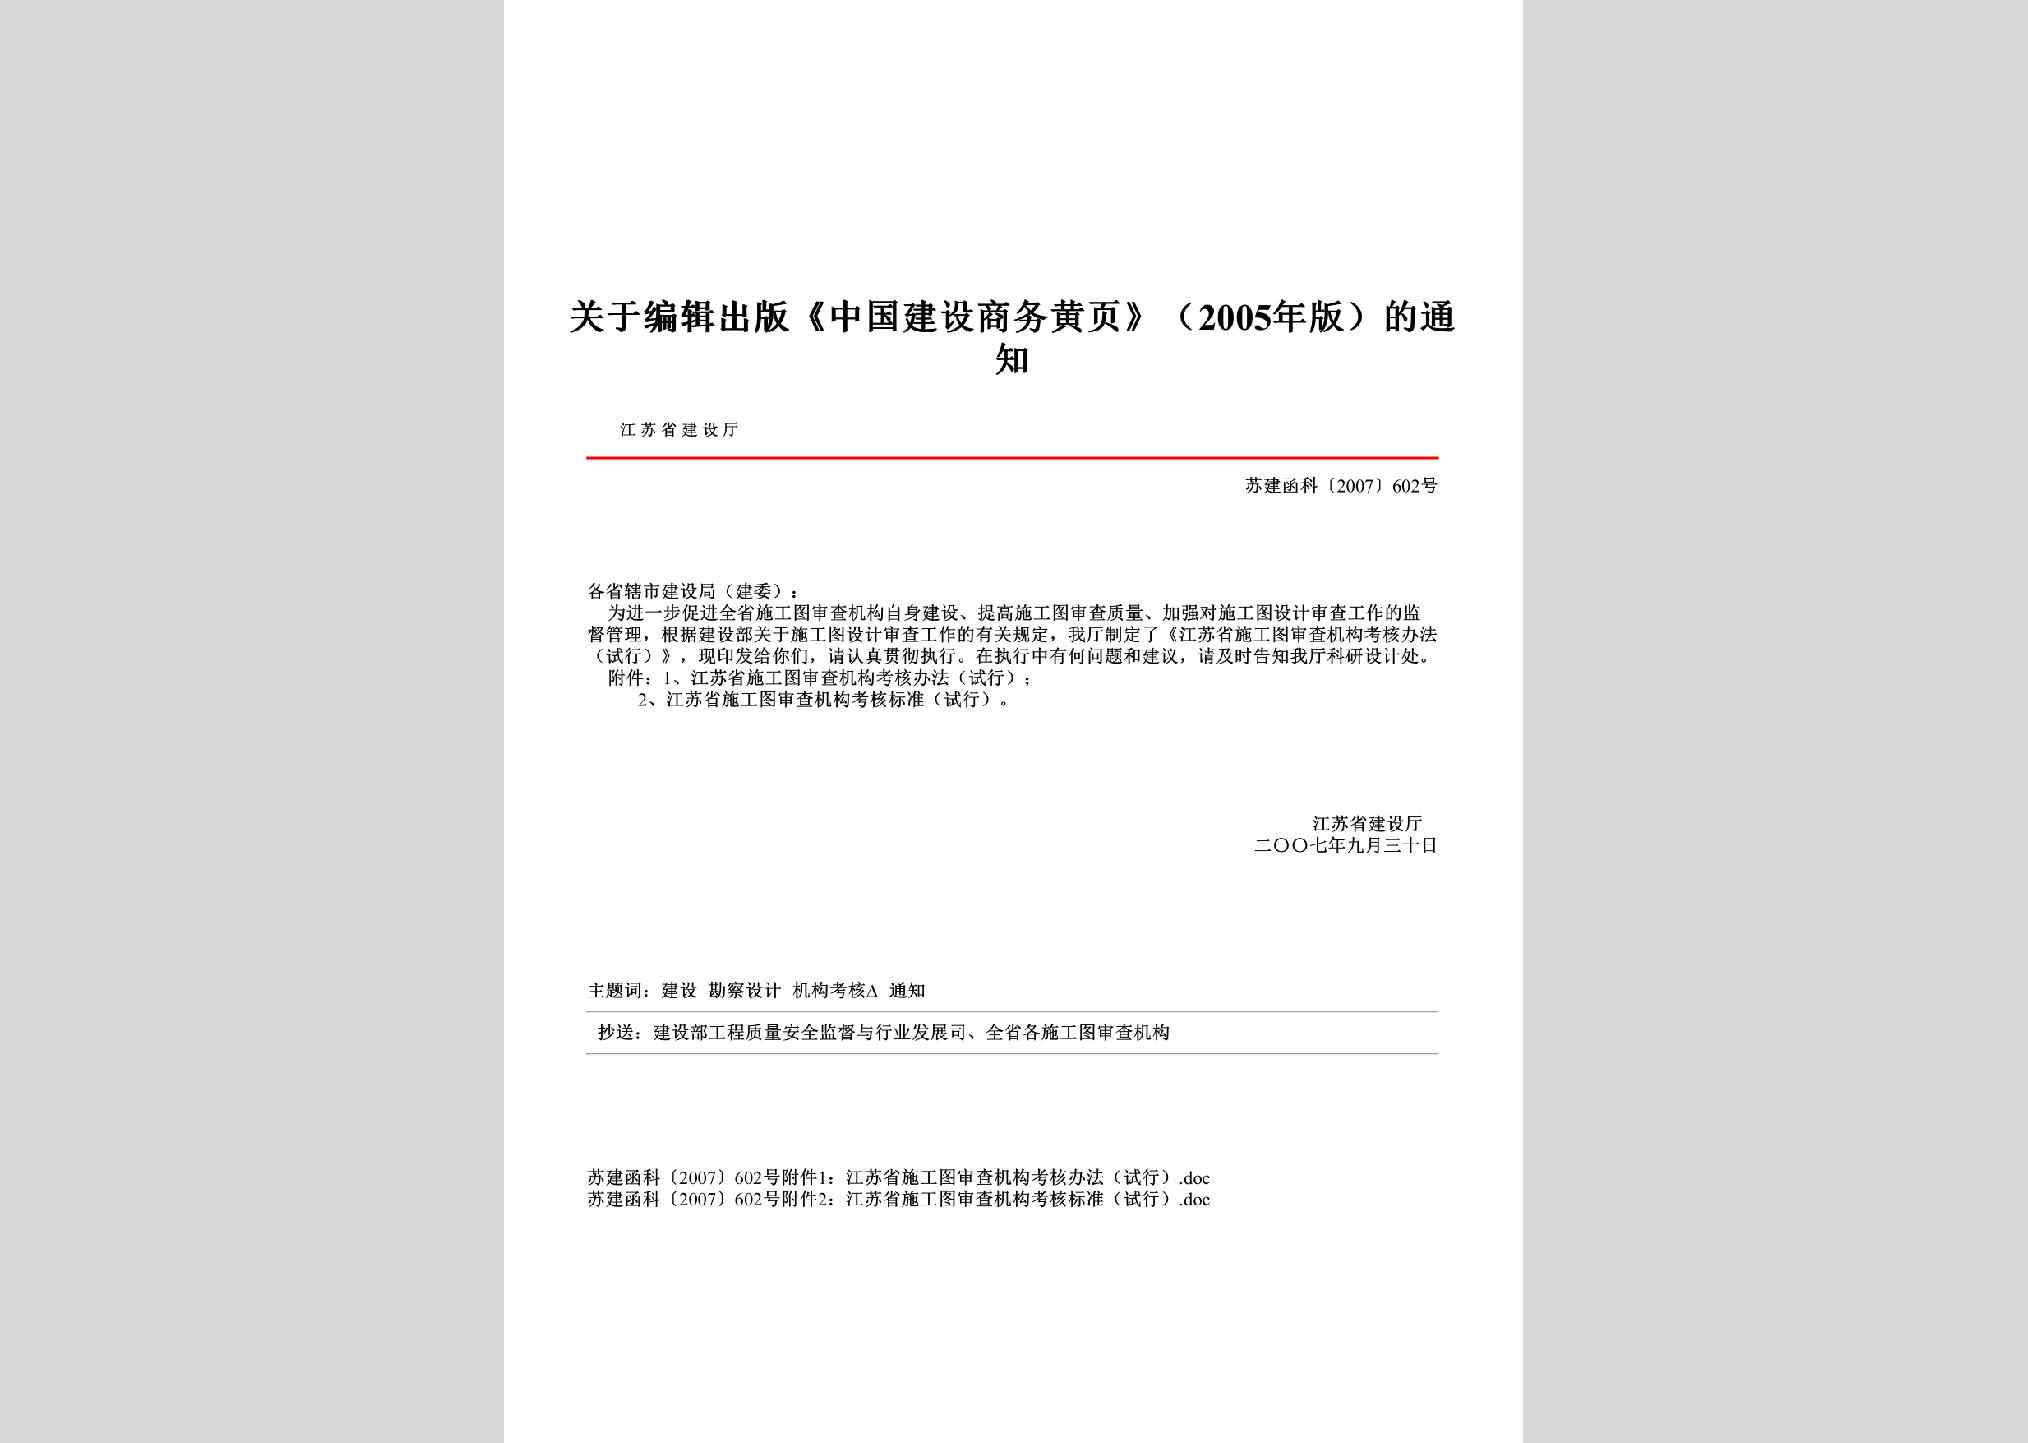 苏建函科[2007]602号：关于编辑出版《中国建设商务黄页》（2005年版）的通知